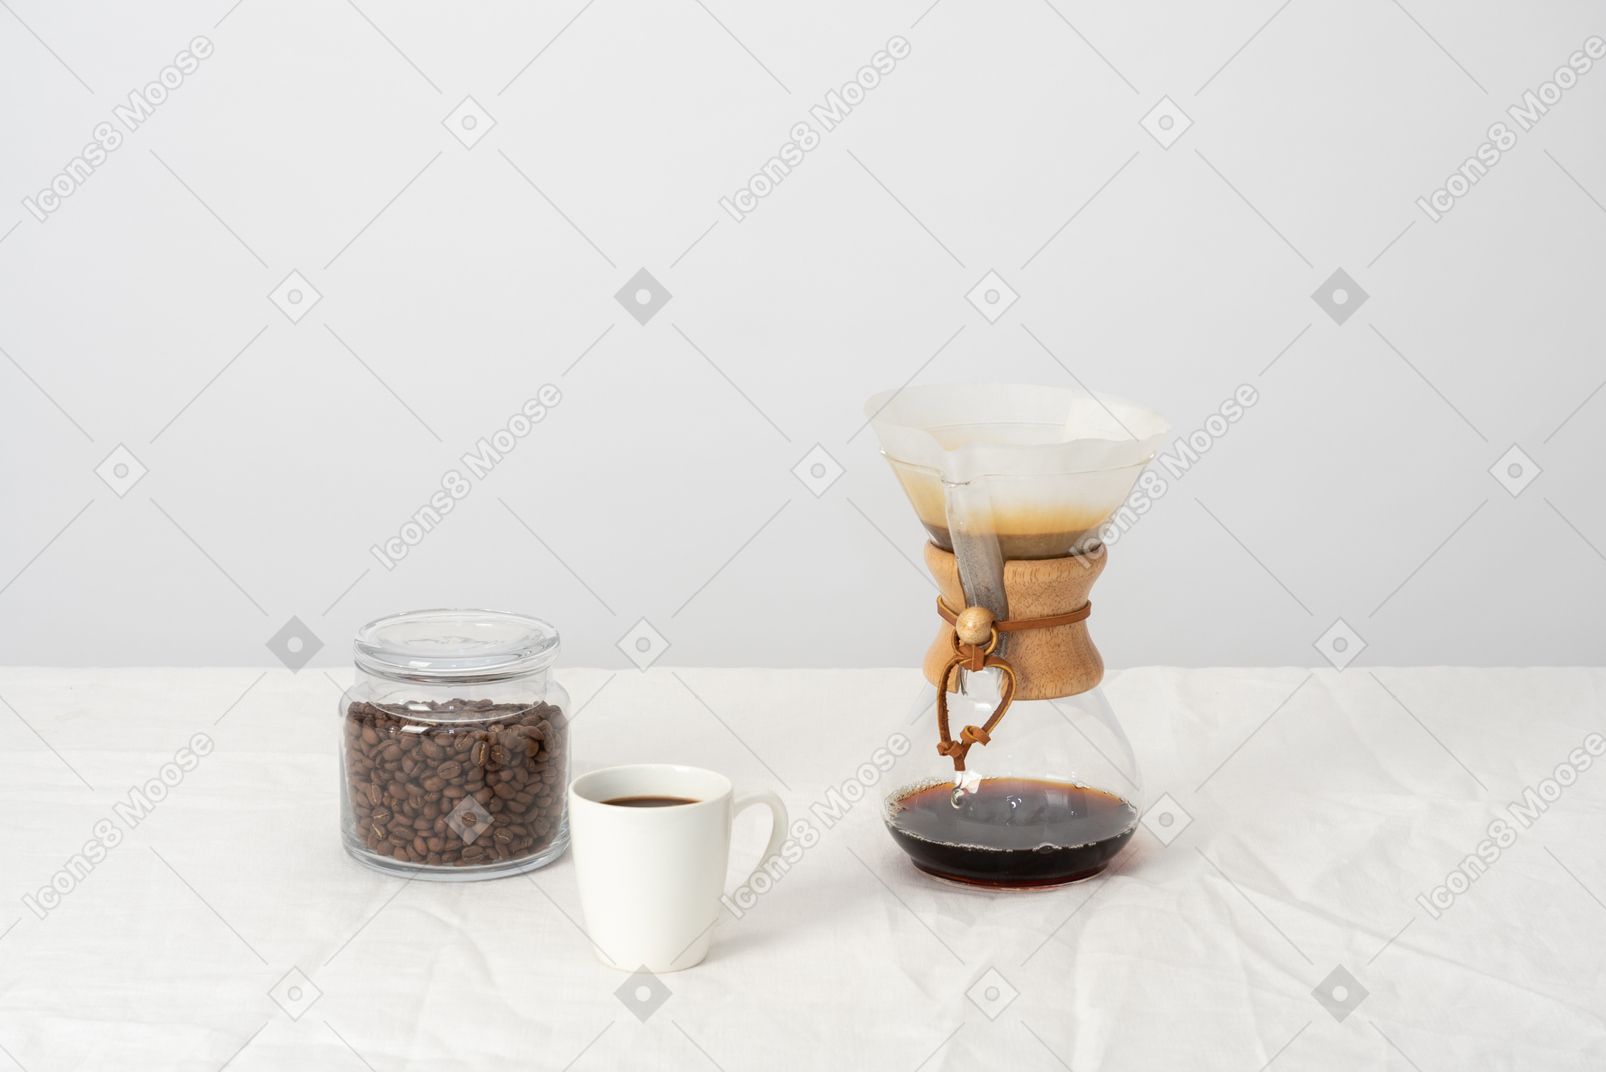 Chemex, xícara de café e jarra com grãos de café